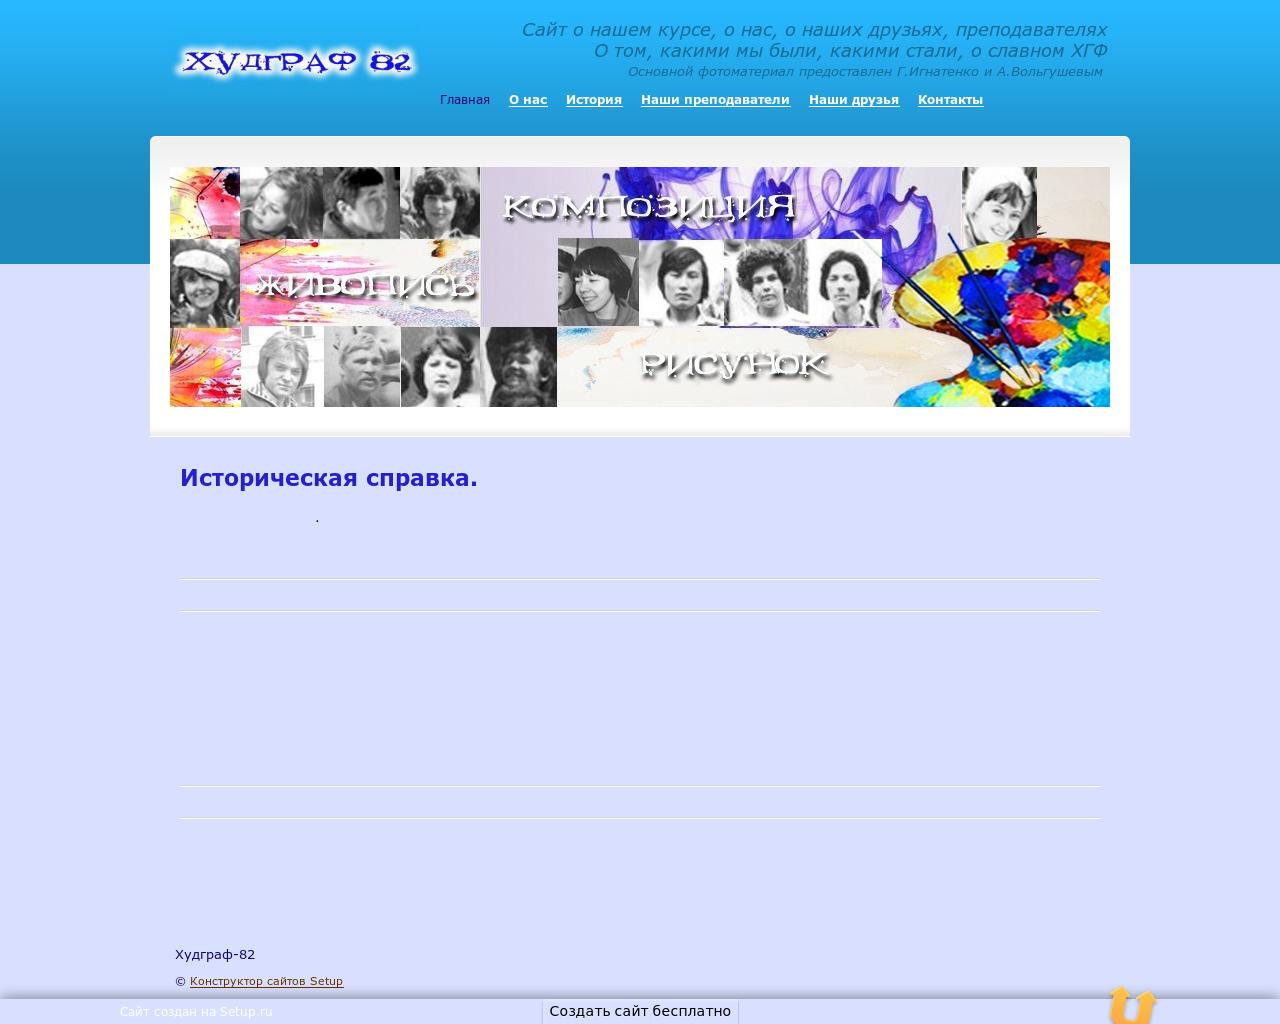 Изображение сайта dv-hudgraf-82.ru в разрешении 1280x1024